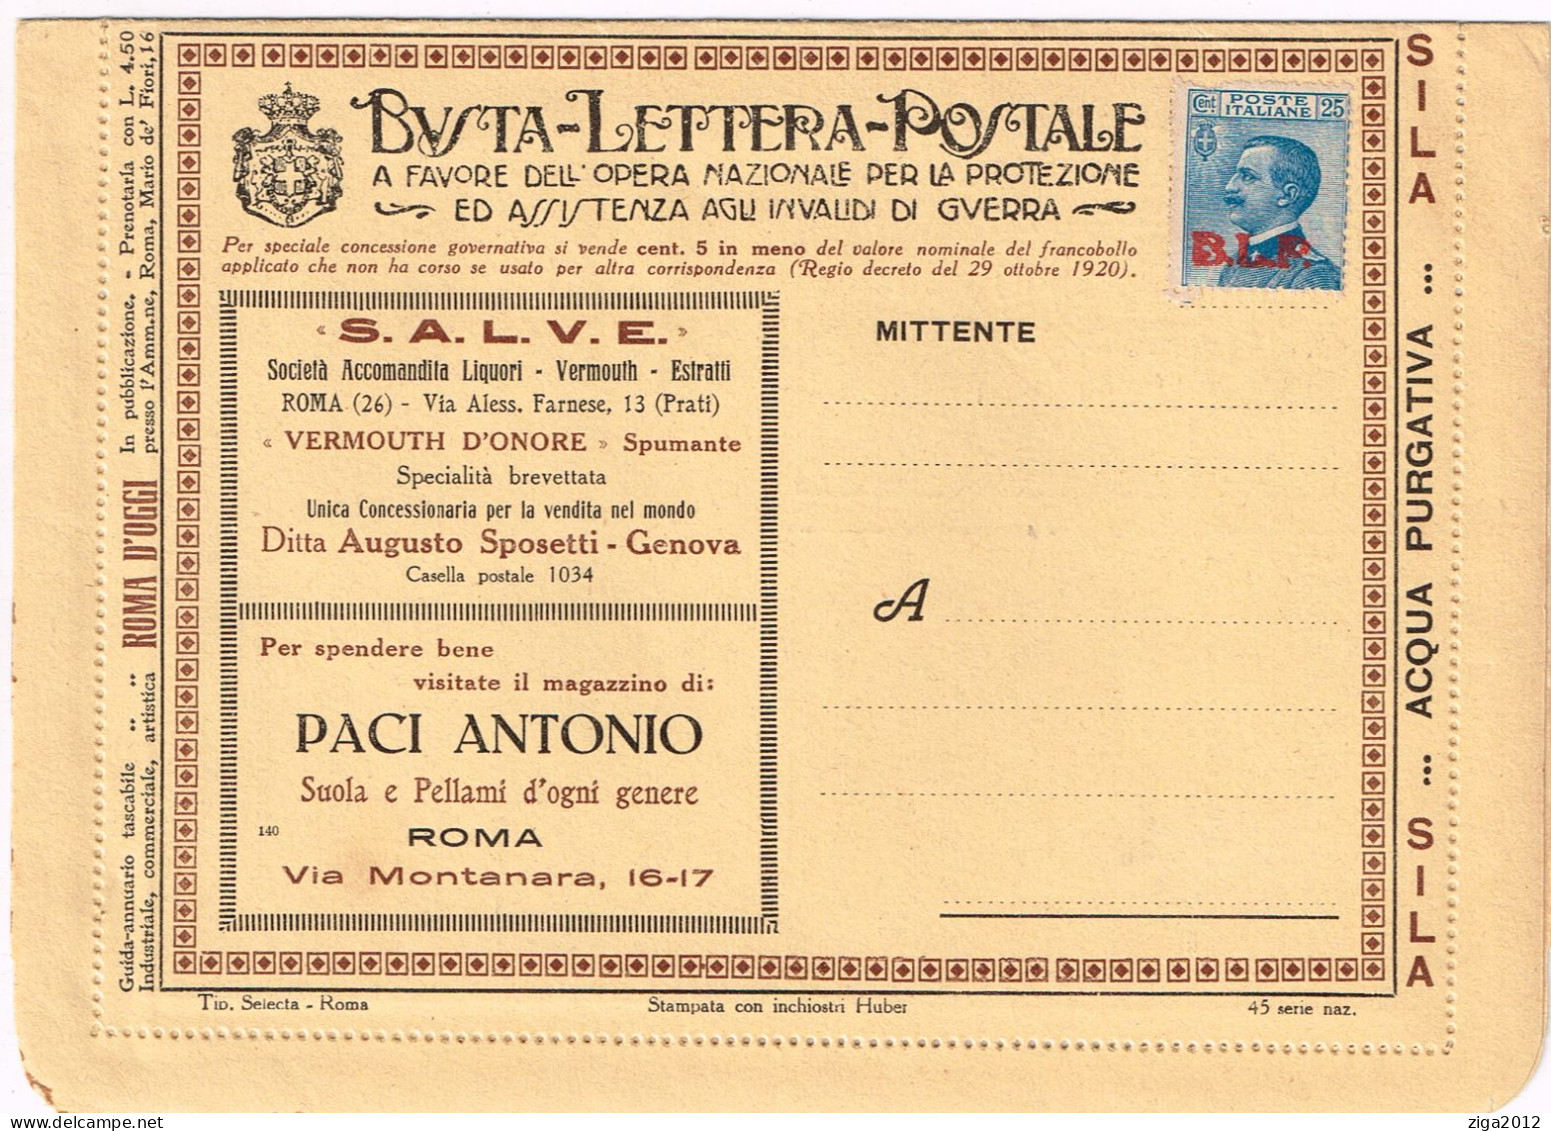 ITALY 1923 B.L.P. BUSTA LETTERA POSTALE CON C.25 III° TIPO NUOVA E COMPLETA - Publicité